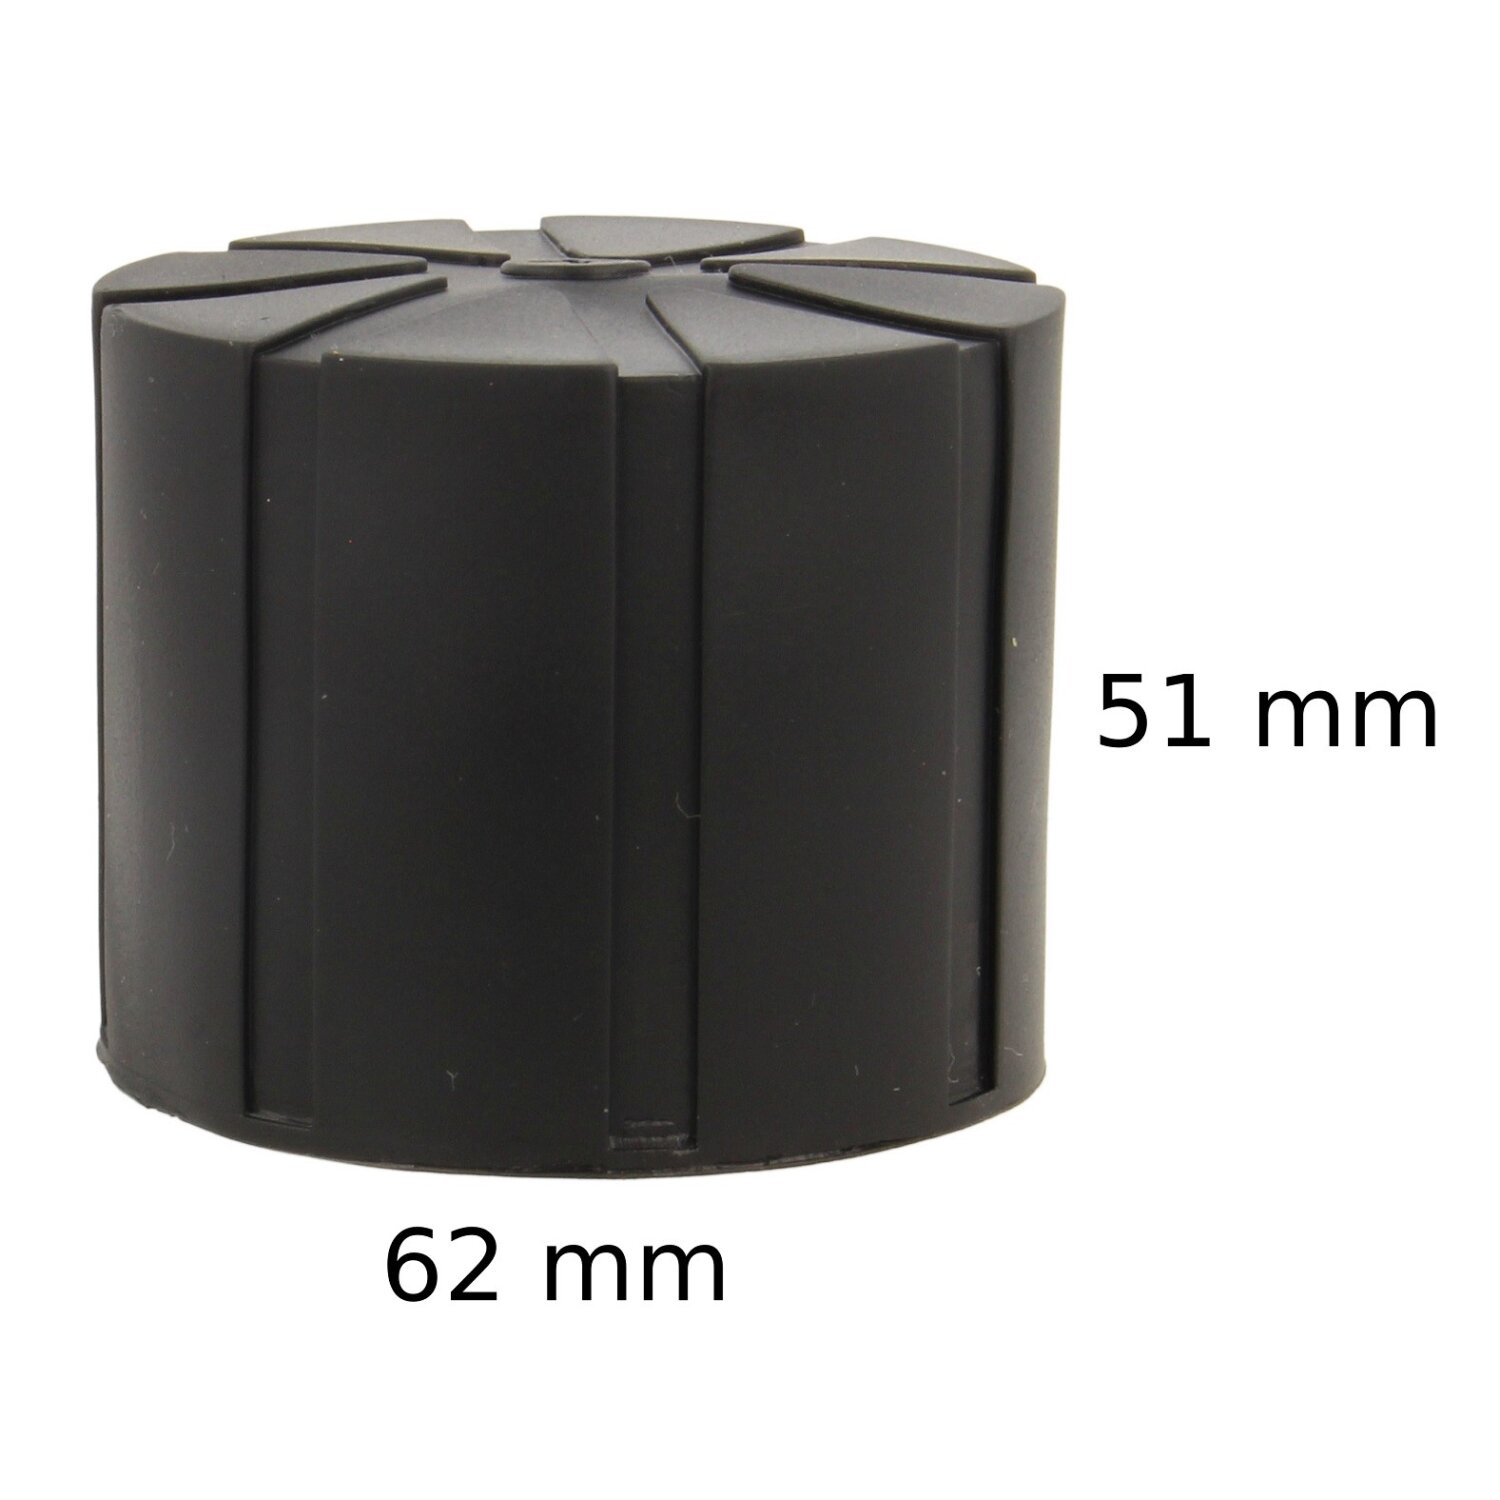 2x Minadax Objektiv Schutz Kappe aus Silicon 51mm x 62mm - Universal ,  12,90 €